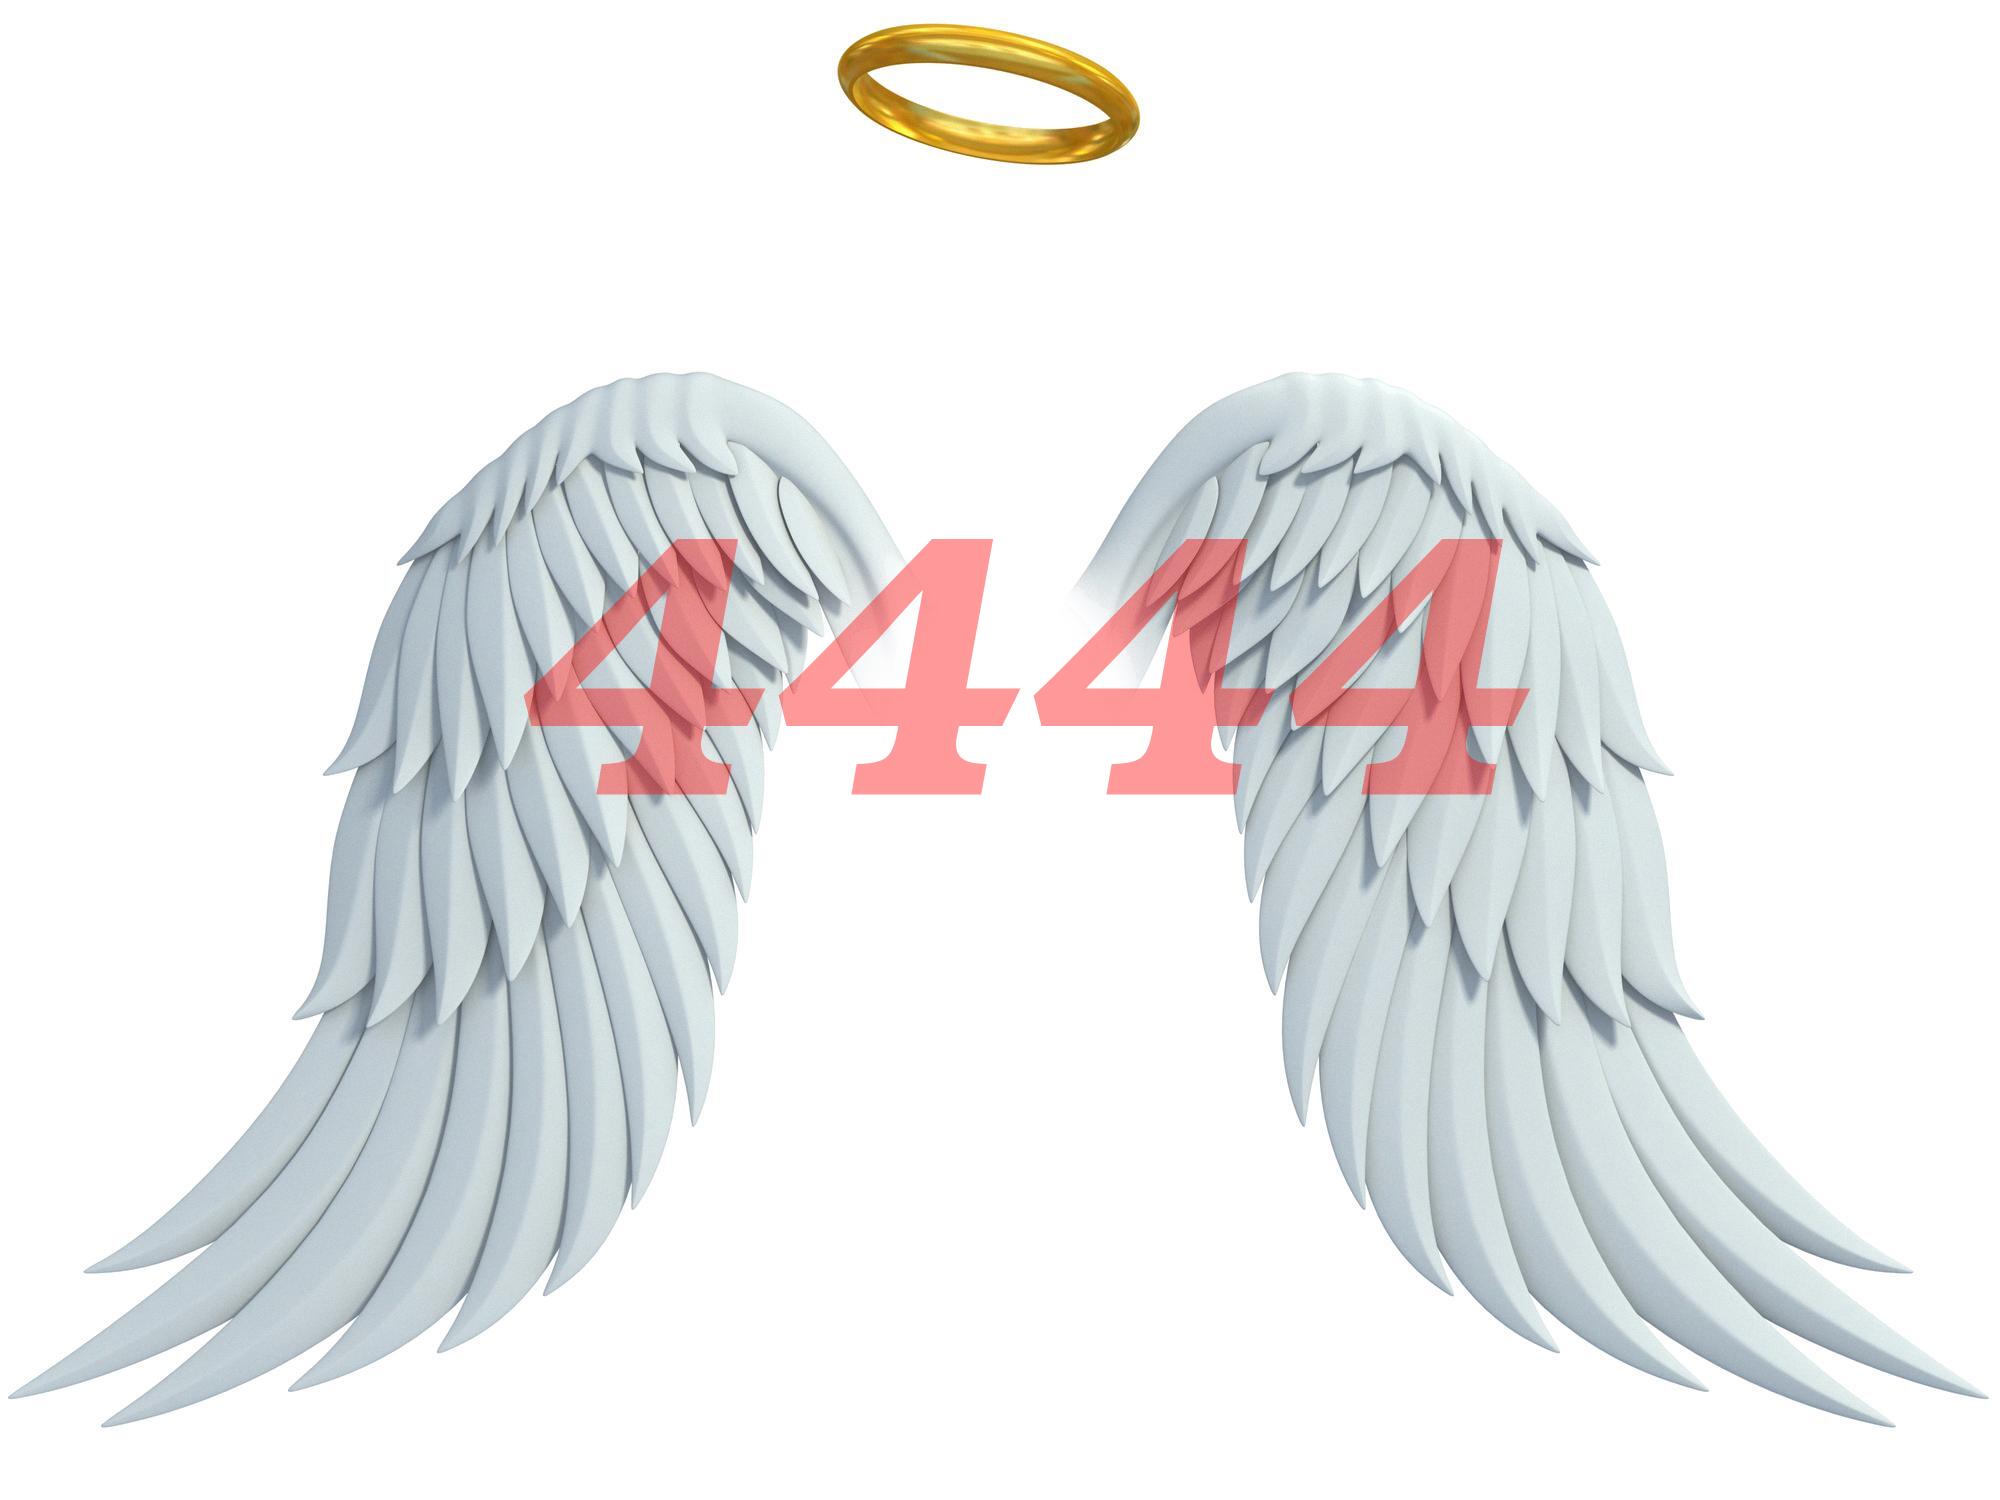 angel-number-4444-0